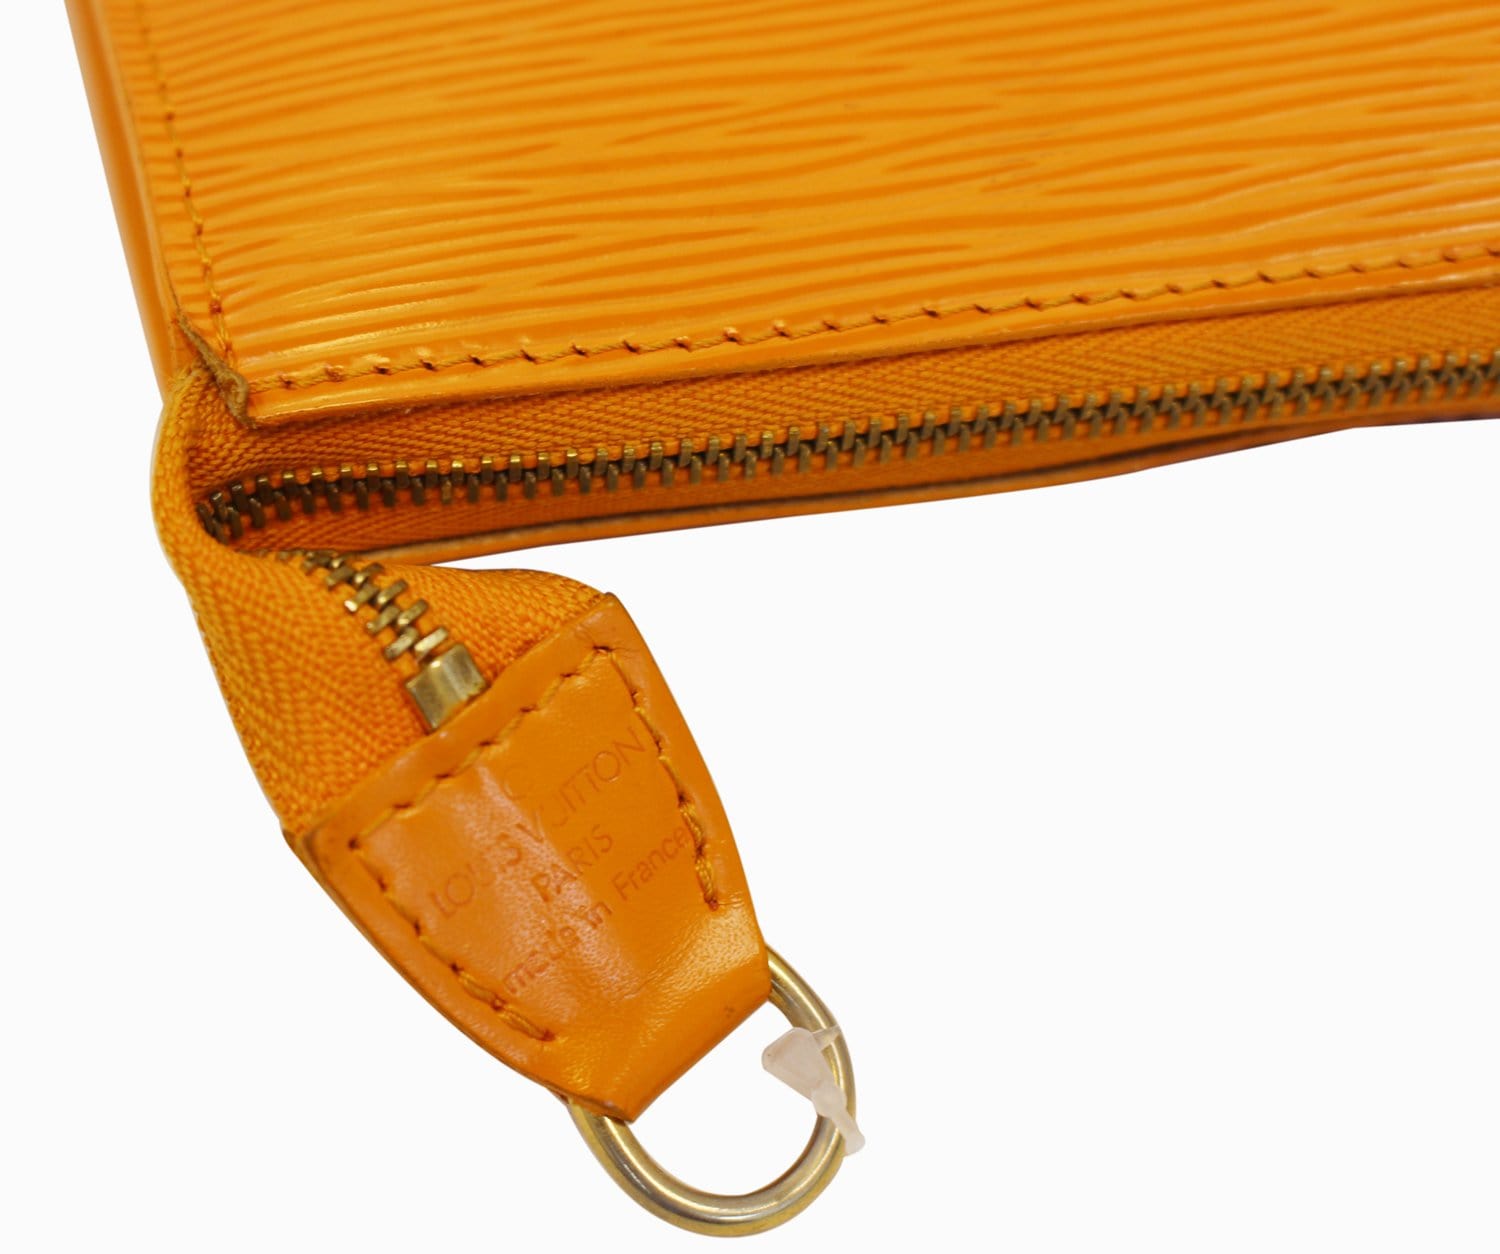 Louis Vuitton Epi Adjustable Shoulder Strap 40.2 47.2 Brown Lv